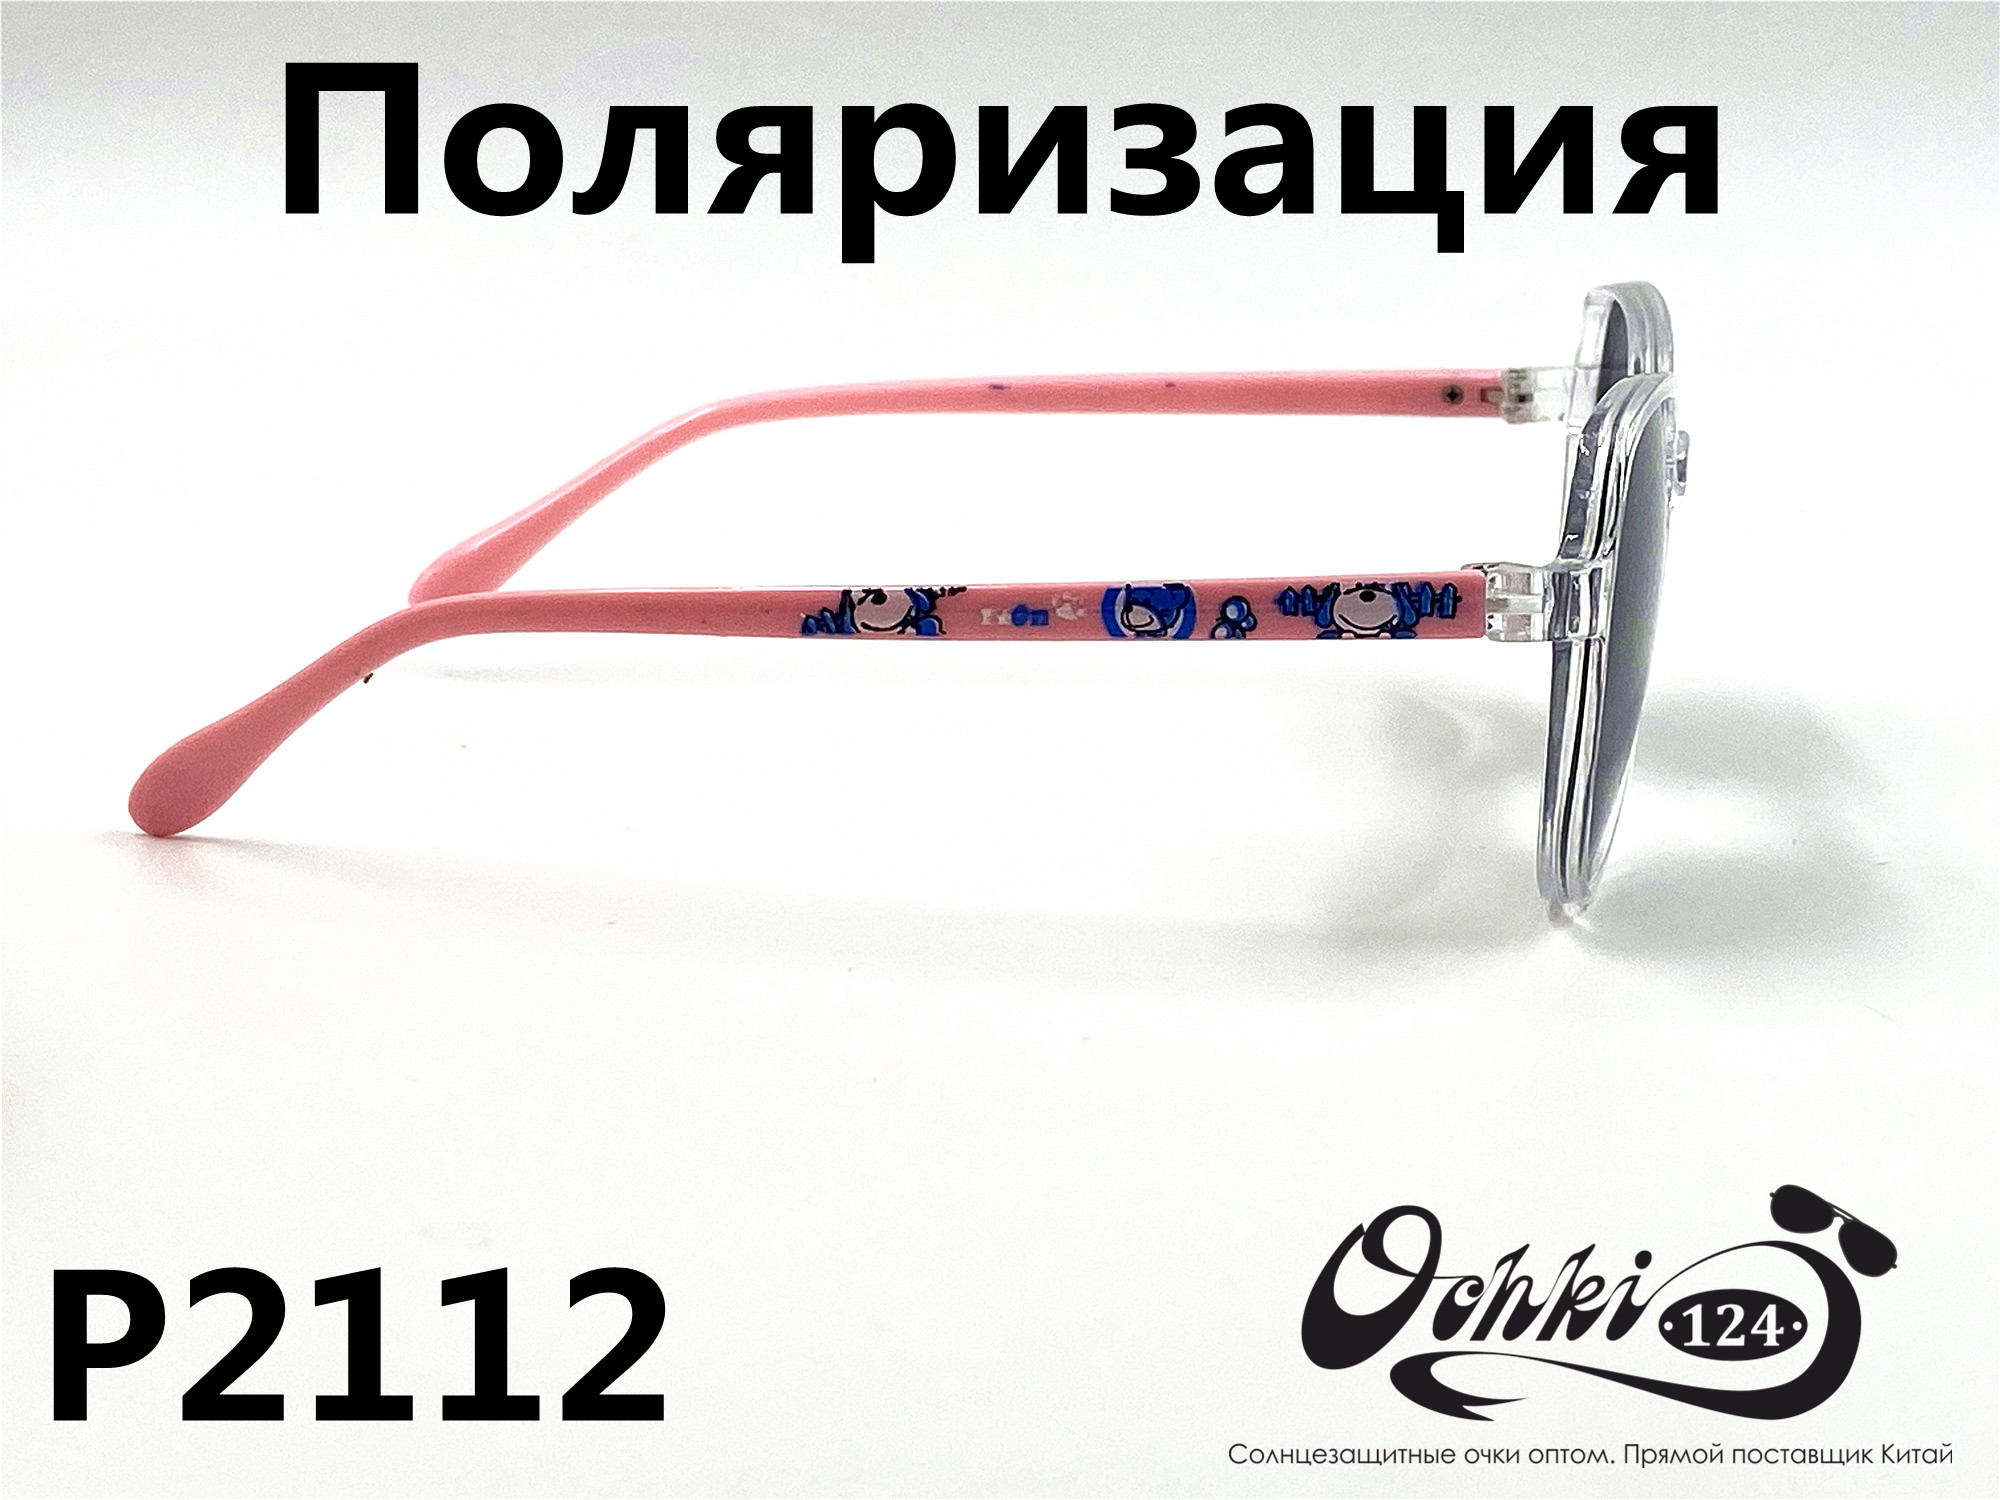  Солнцезащитные очки картинка 2022 Детские Поляризованные Круглые P2112-6 